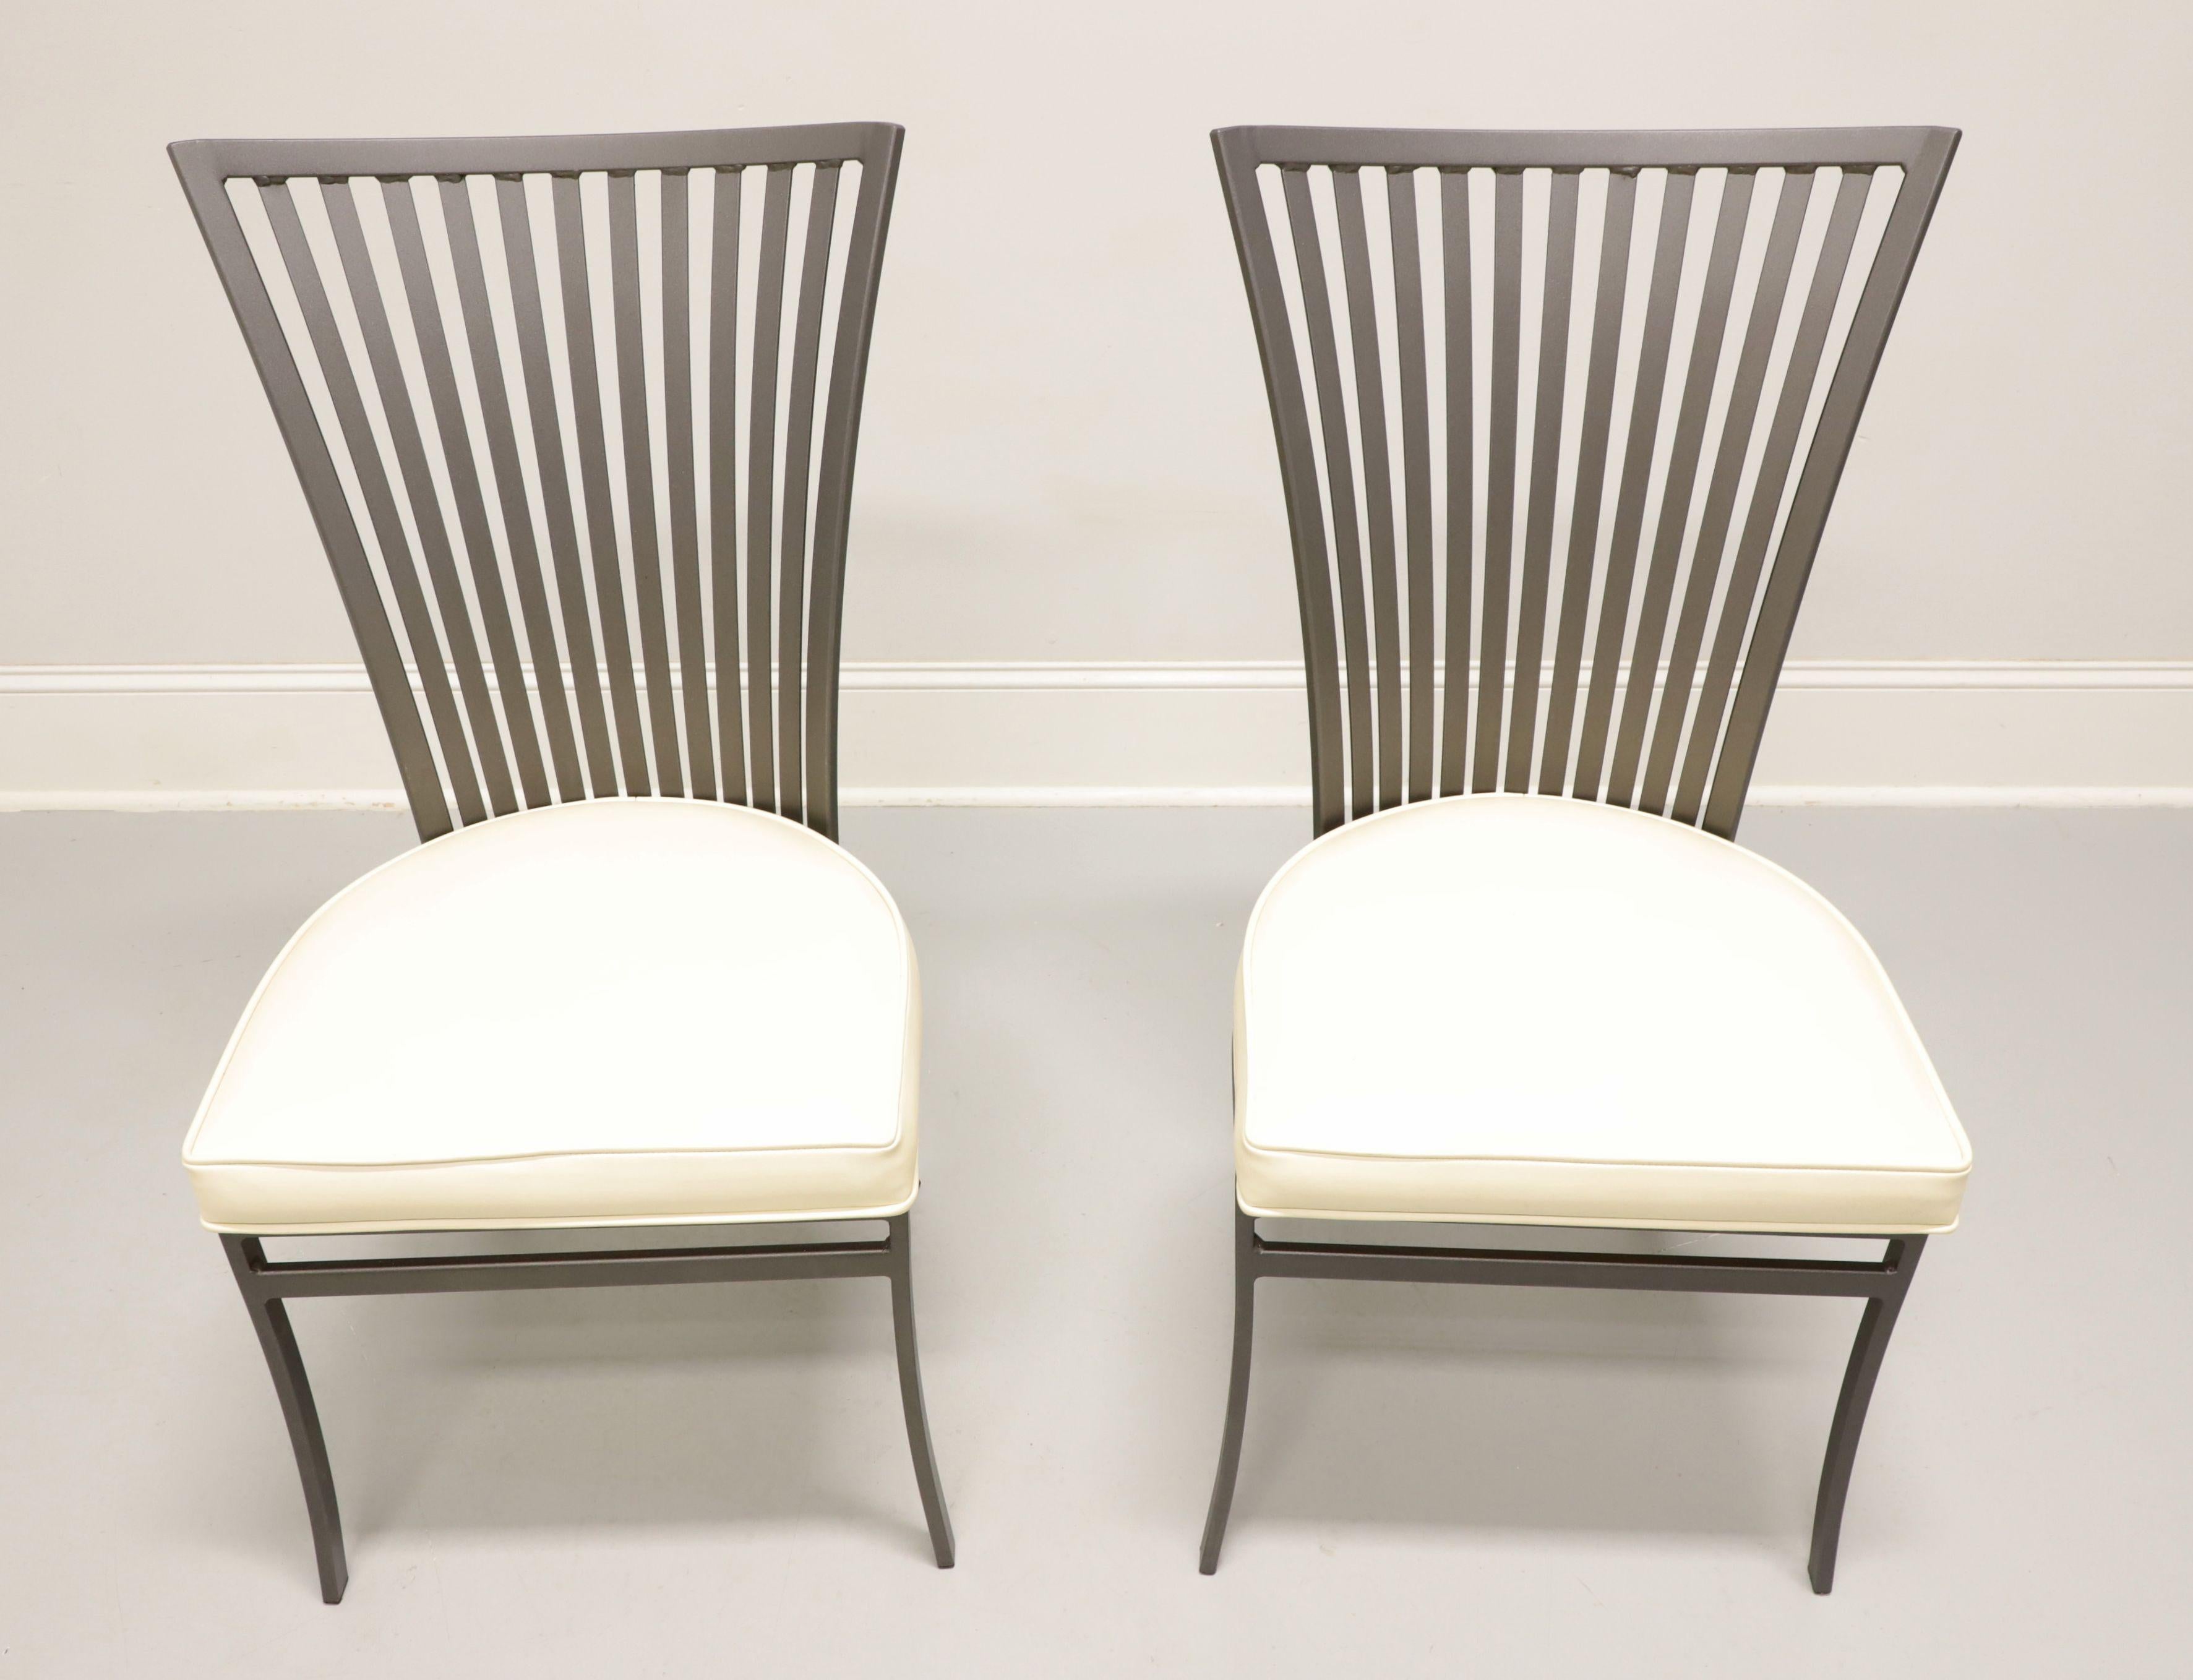 Paire de chaises de patio en acier de style moderne du milieu du XXe siècle, conçues par Arthur Umanoff pour Shaver-Howard. Piétement en acier, finition grise, dossier évasé avec barreaux et fuseaux droits, assise recouverte de vinyle blanc, tablier